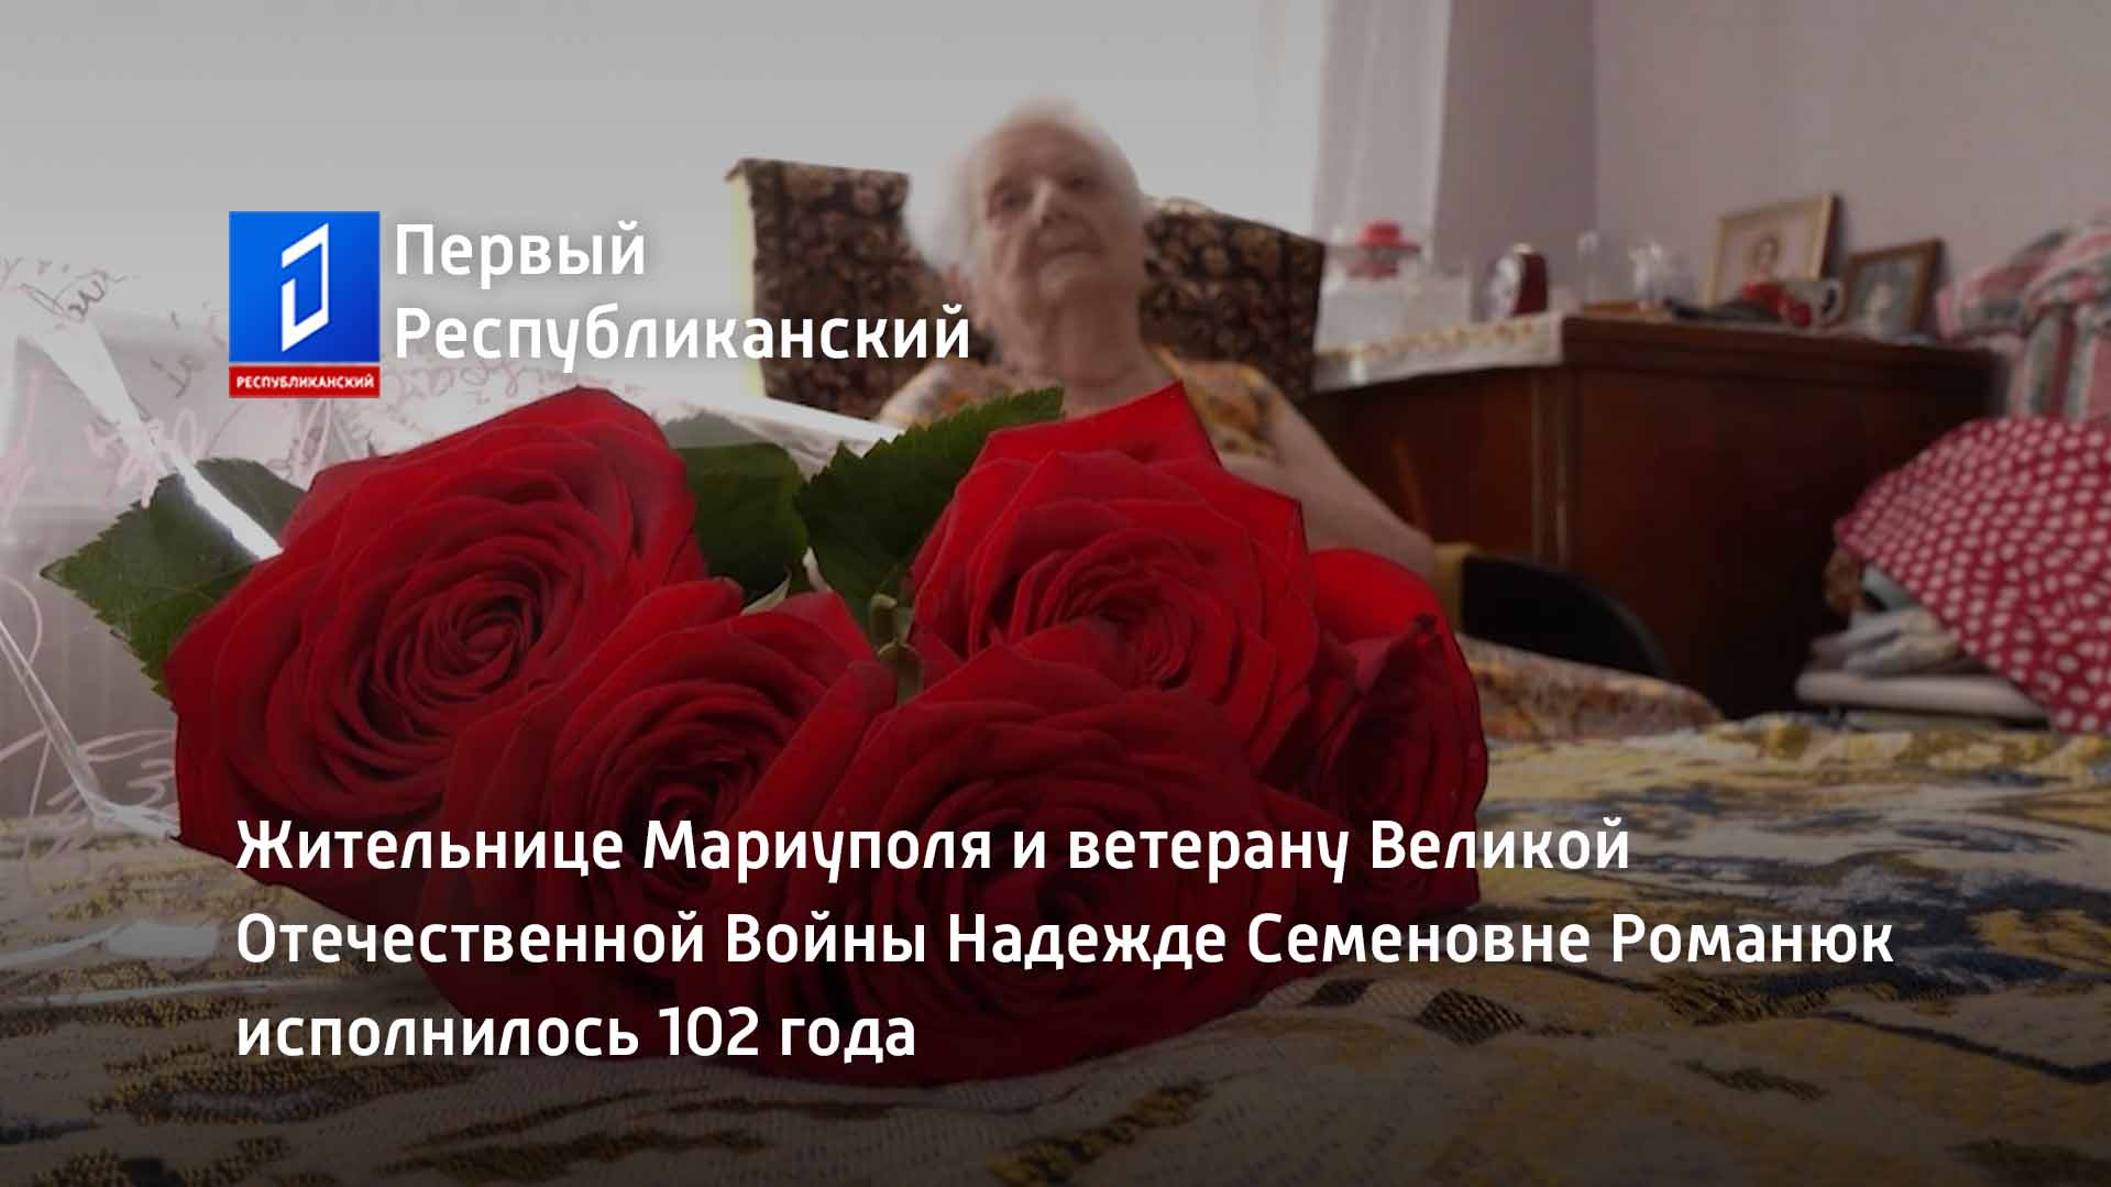 Жительнице Мариуполя и ветерану ВОВ Надежде Семеновне Романюк исполнилось 102 года